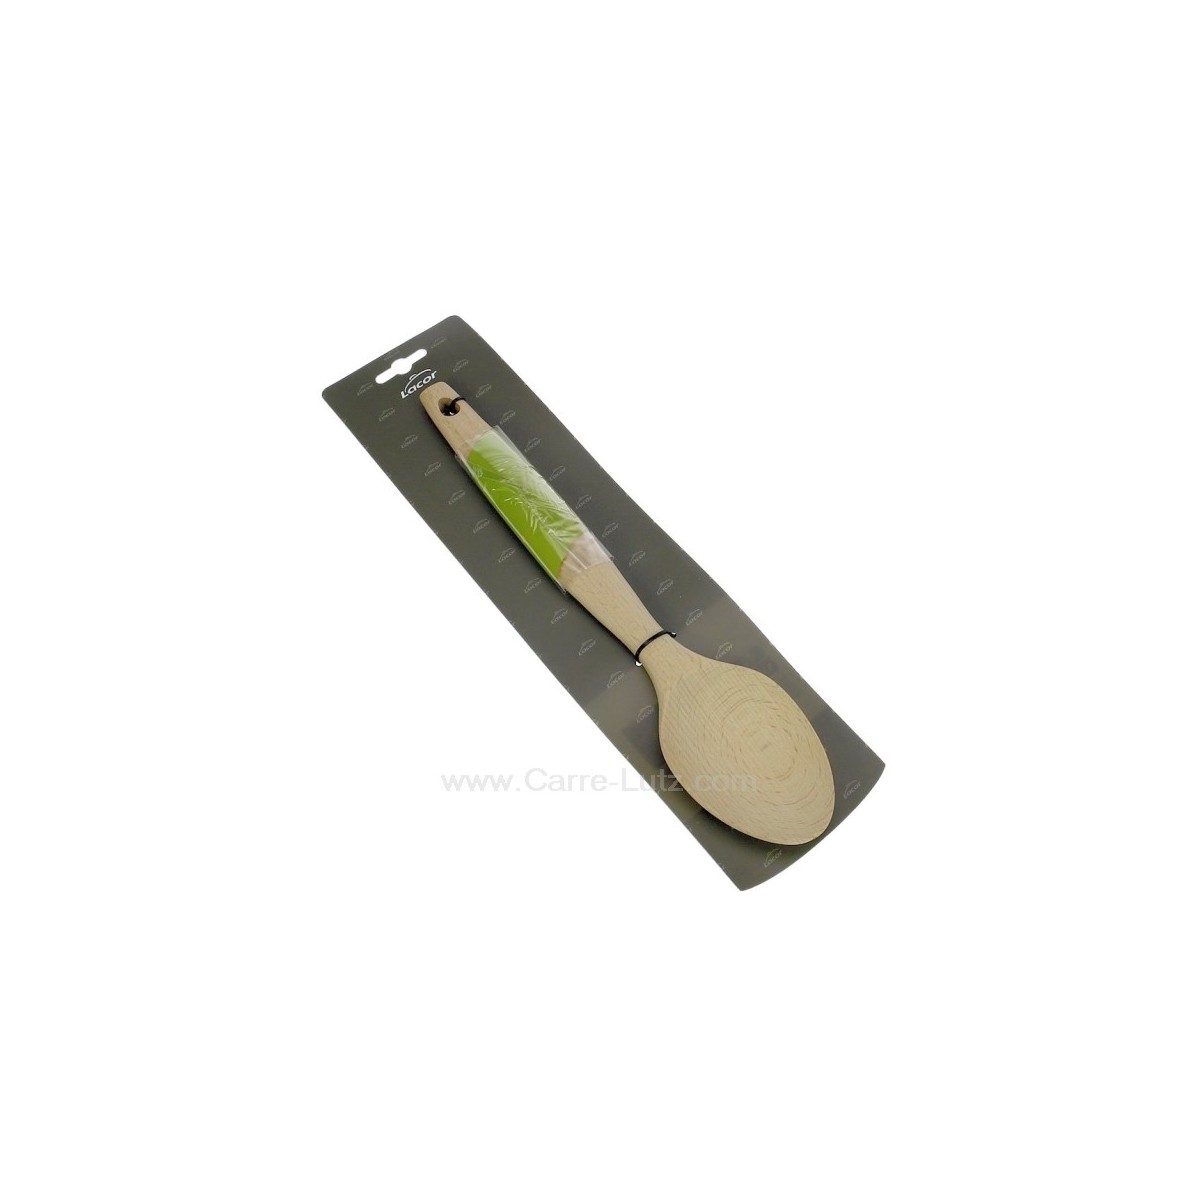 991LC68155  68155 - Cuillère en hêtre avec insert silicone sur le manche pour une meilleur tenue Lacor  5,40 €